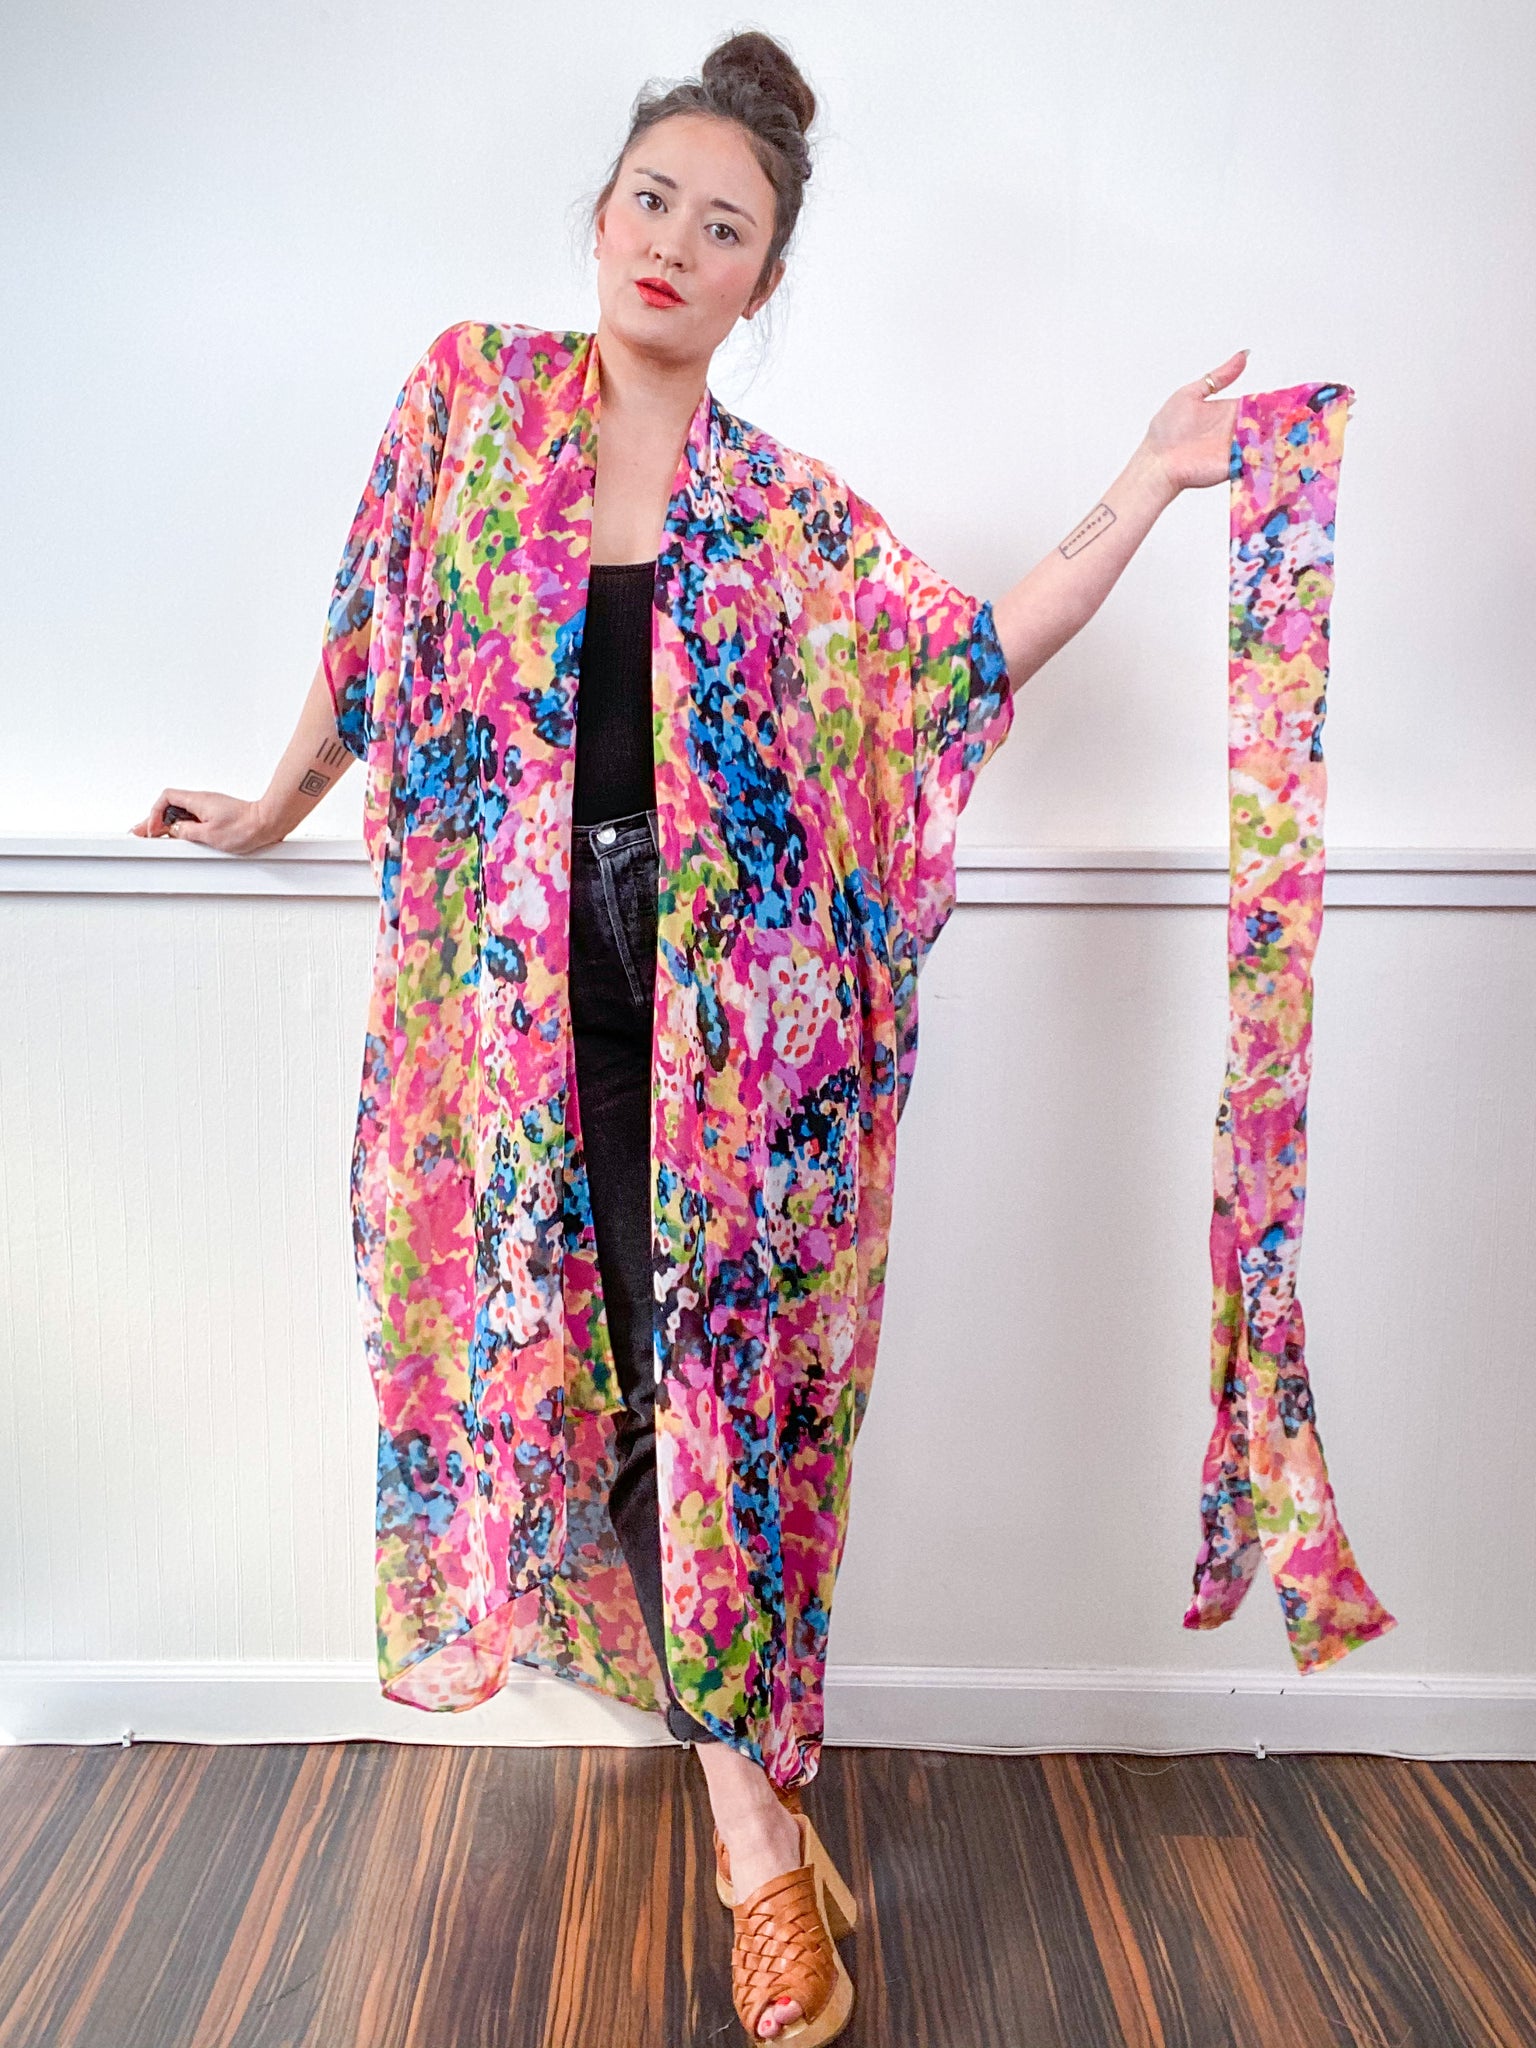 Print High Low Kimono Multi Watercolor Chiffon